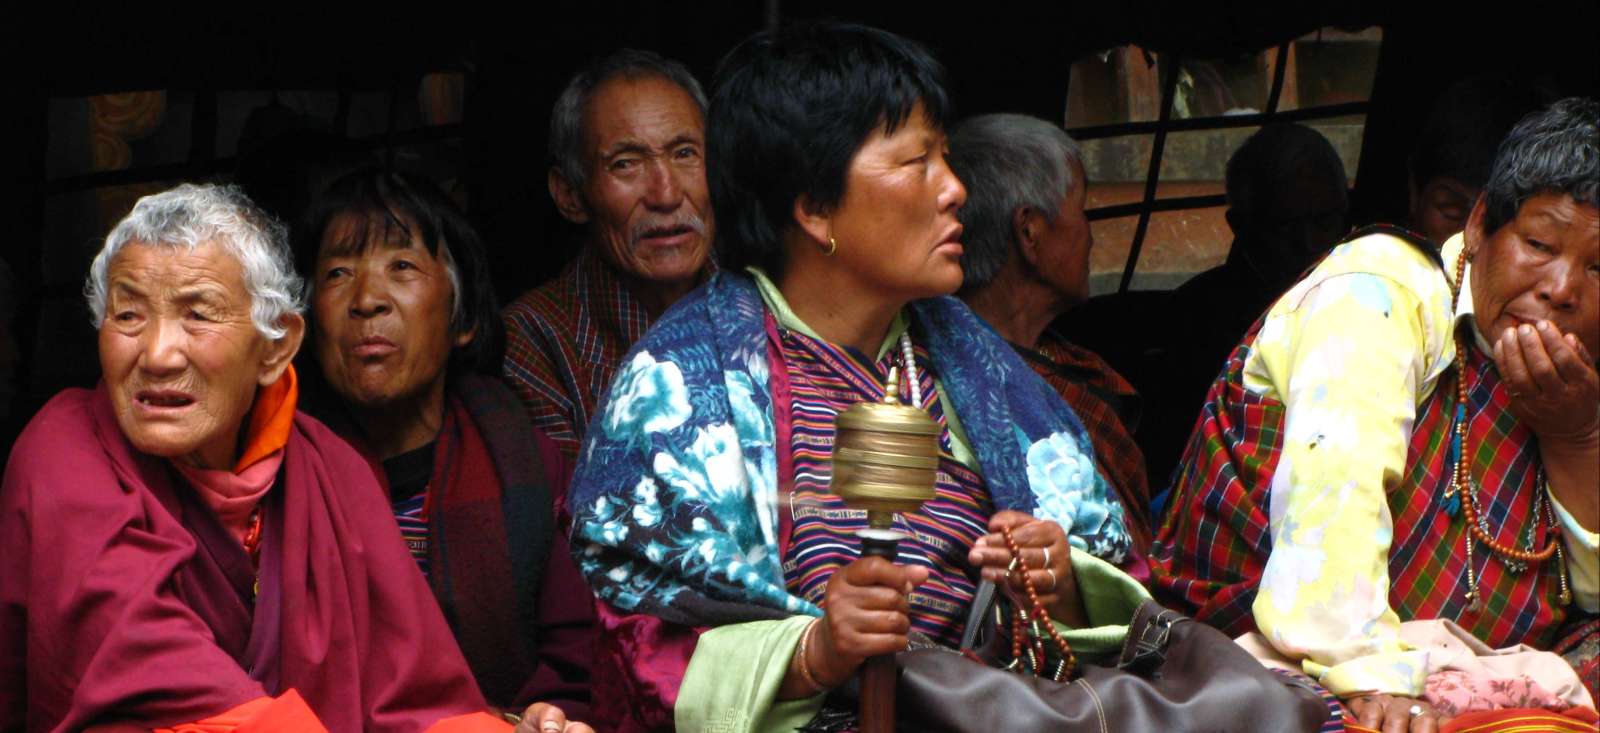 Voyage découverte - Les trésors cachés du Bhoutan